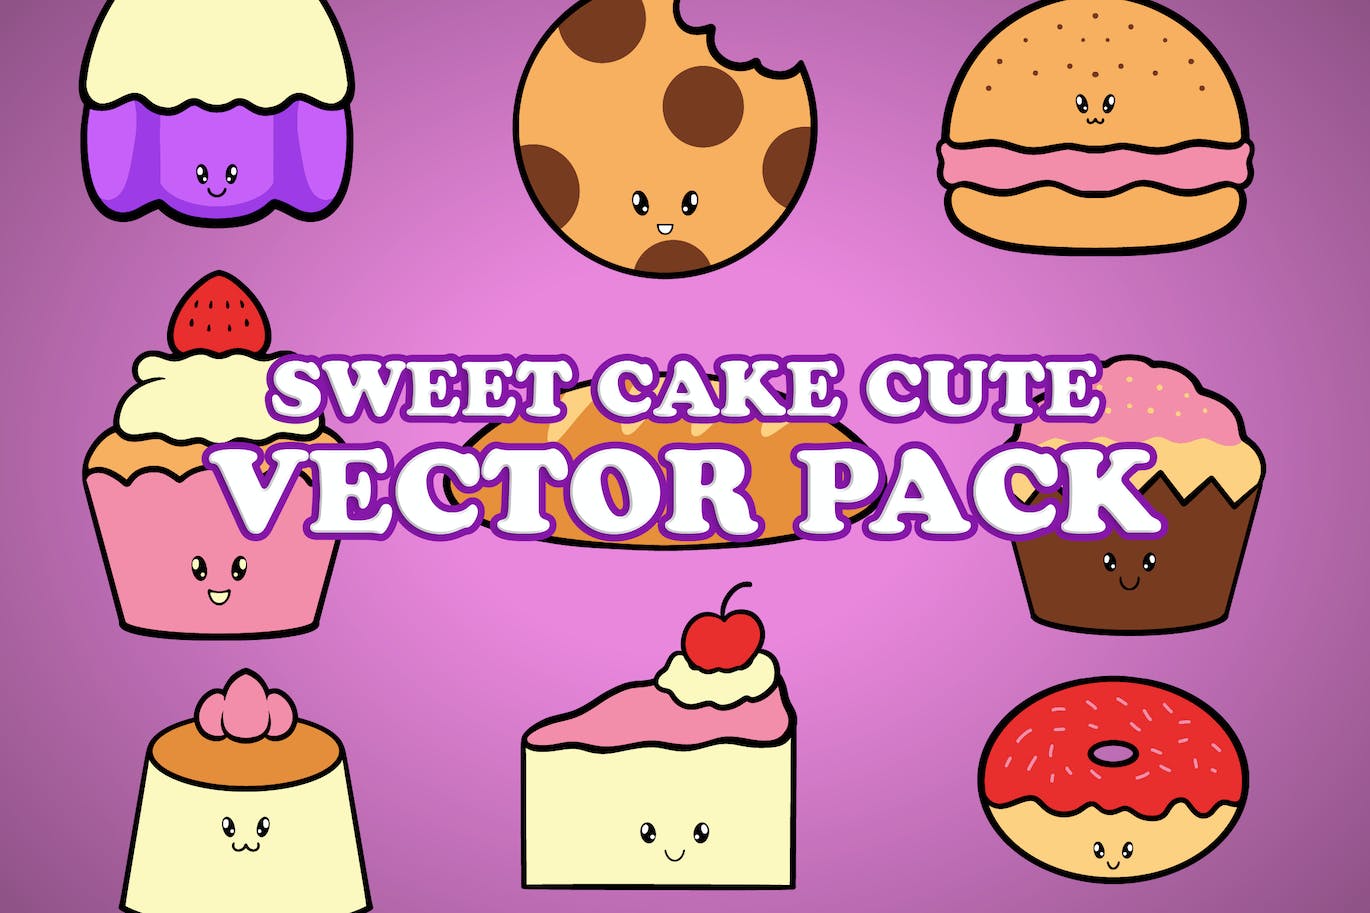 可爱的蛋糕卡通插画矢量素材 Cute Cake Cartoon Illustration Vector Pack 设计素材 第1张